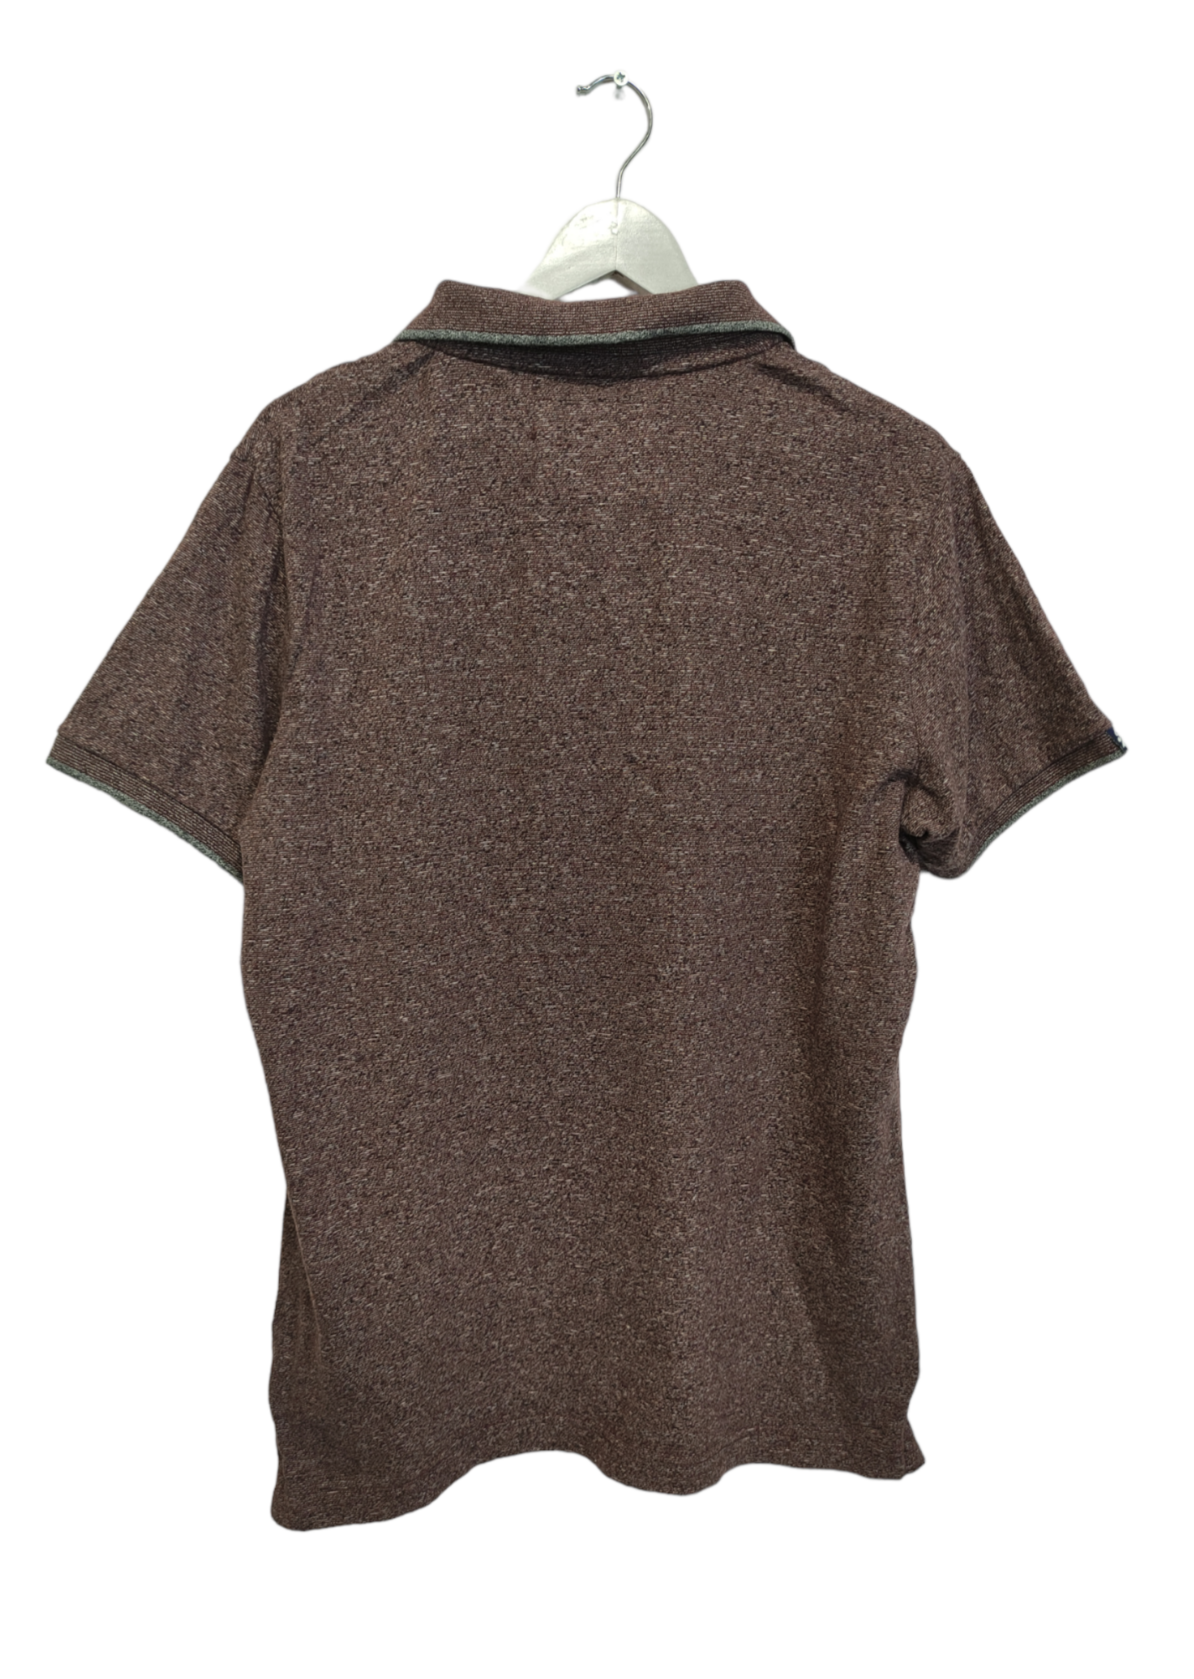 Ανδρική Μπλούζα - T-Shirt τύπου polo SUPERDRY σε Μελιτζανί χρώμα (Large)